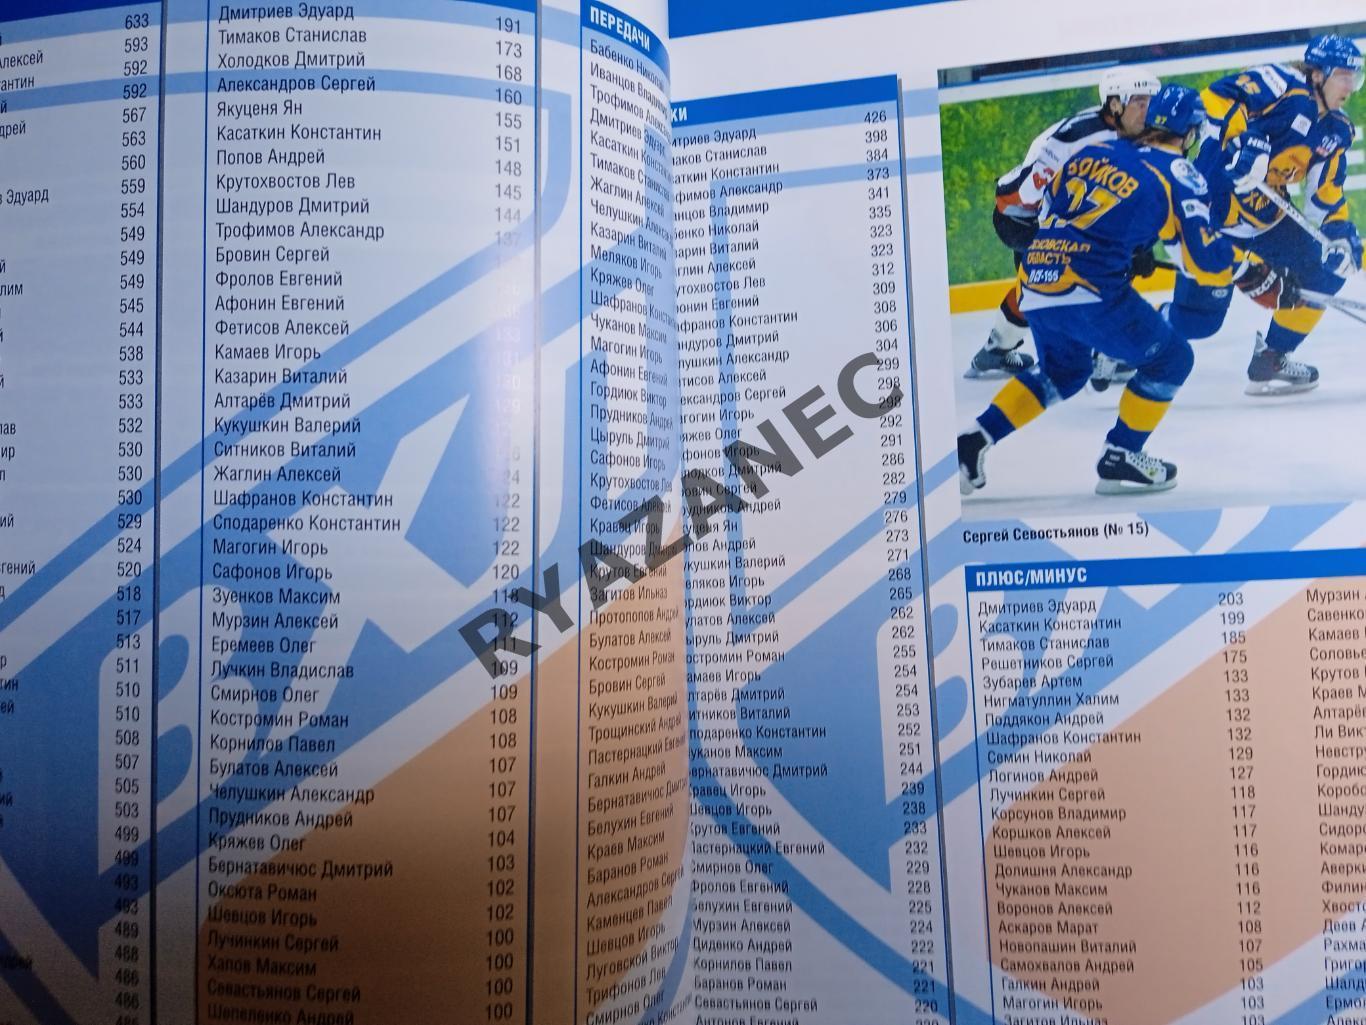 Путеводитель ВХЛ (Высшая хоккейная лига) - 2010/2011 3